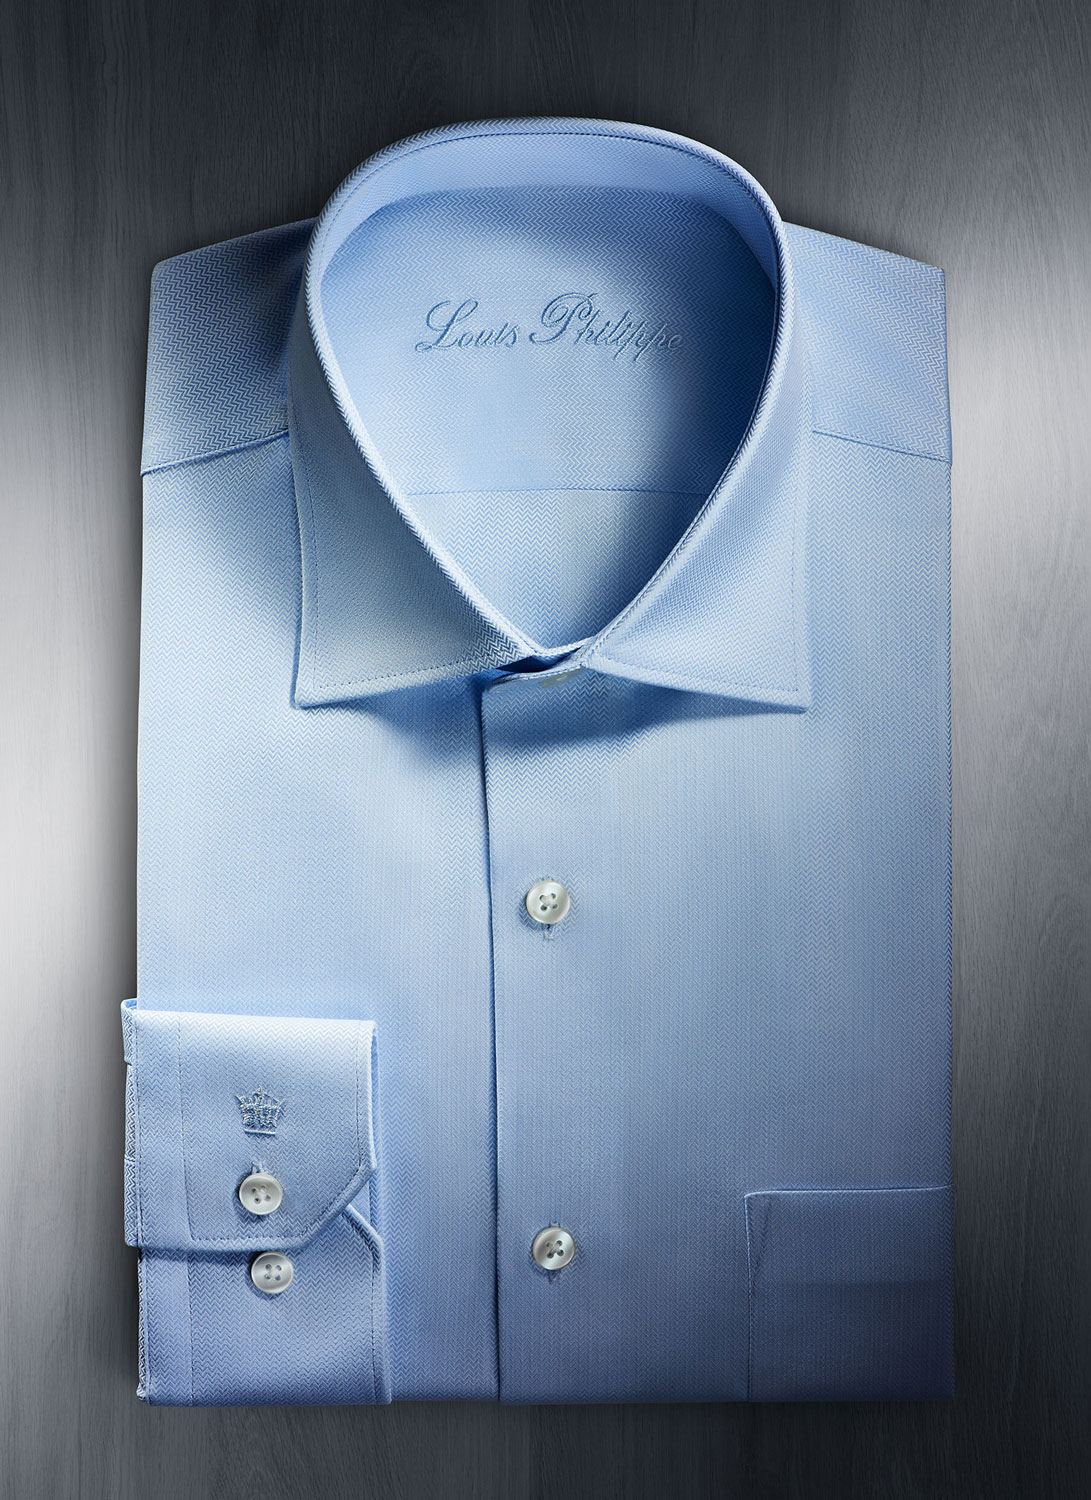 Louis-Philippe-Shirt-.jpg